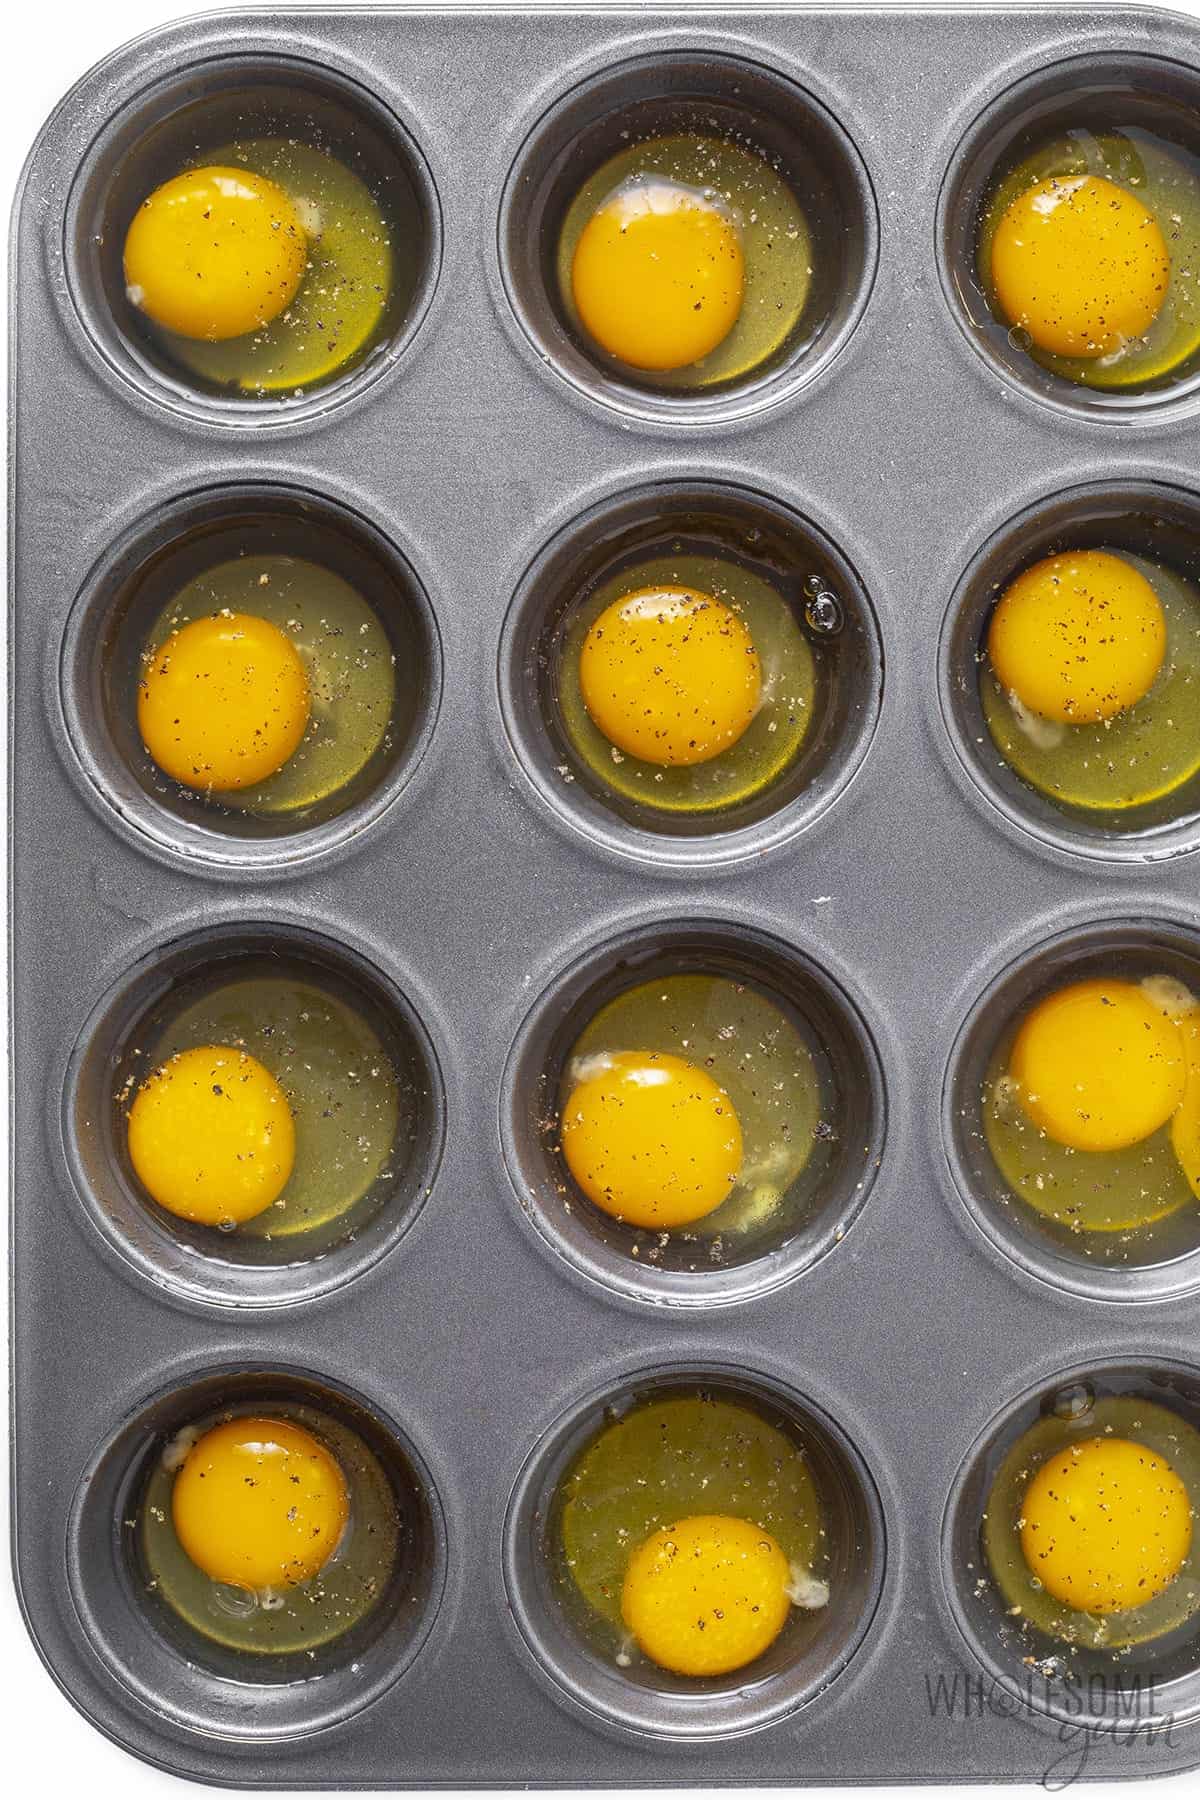 Raw eggs in muffin tin.